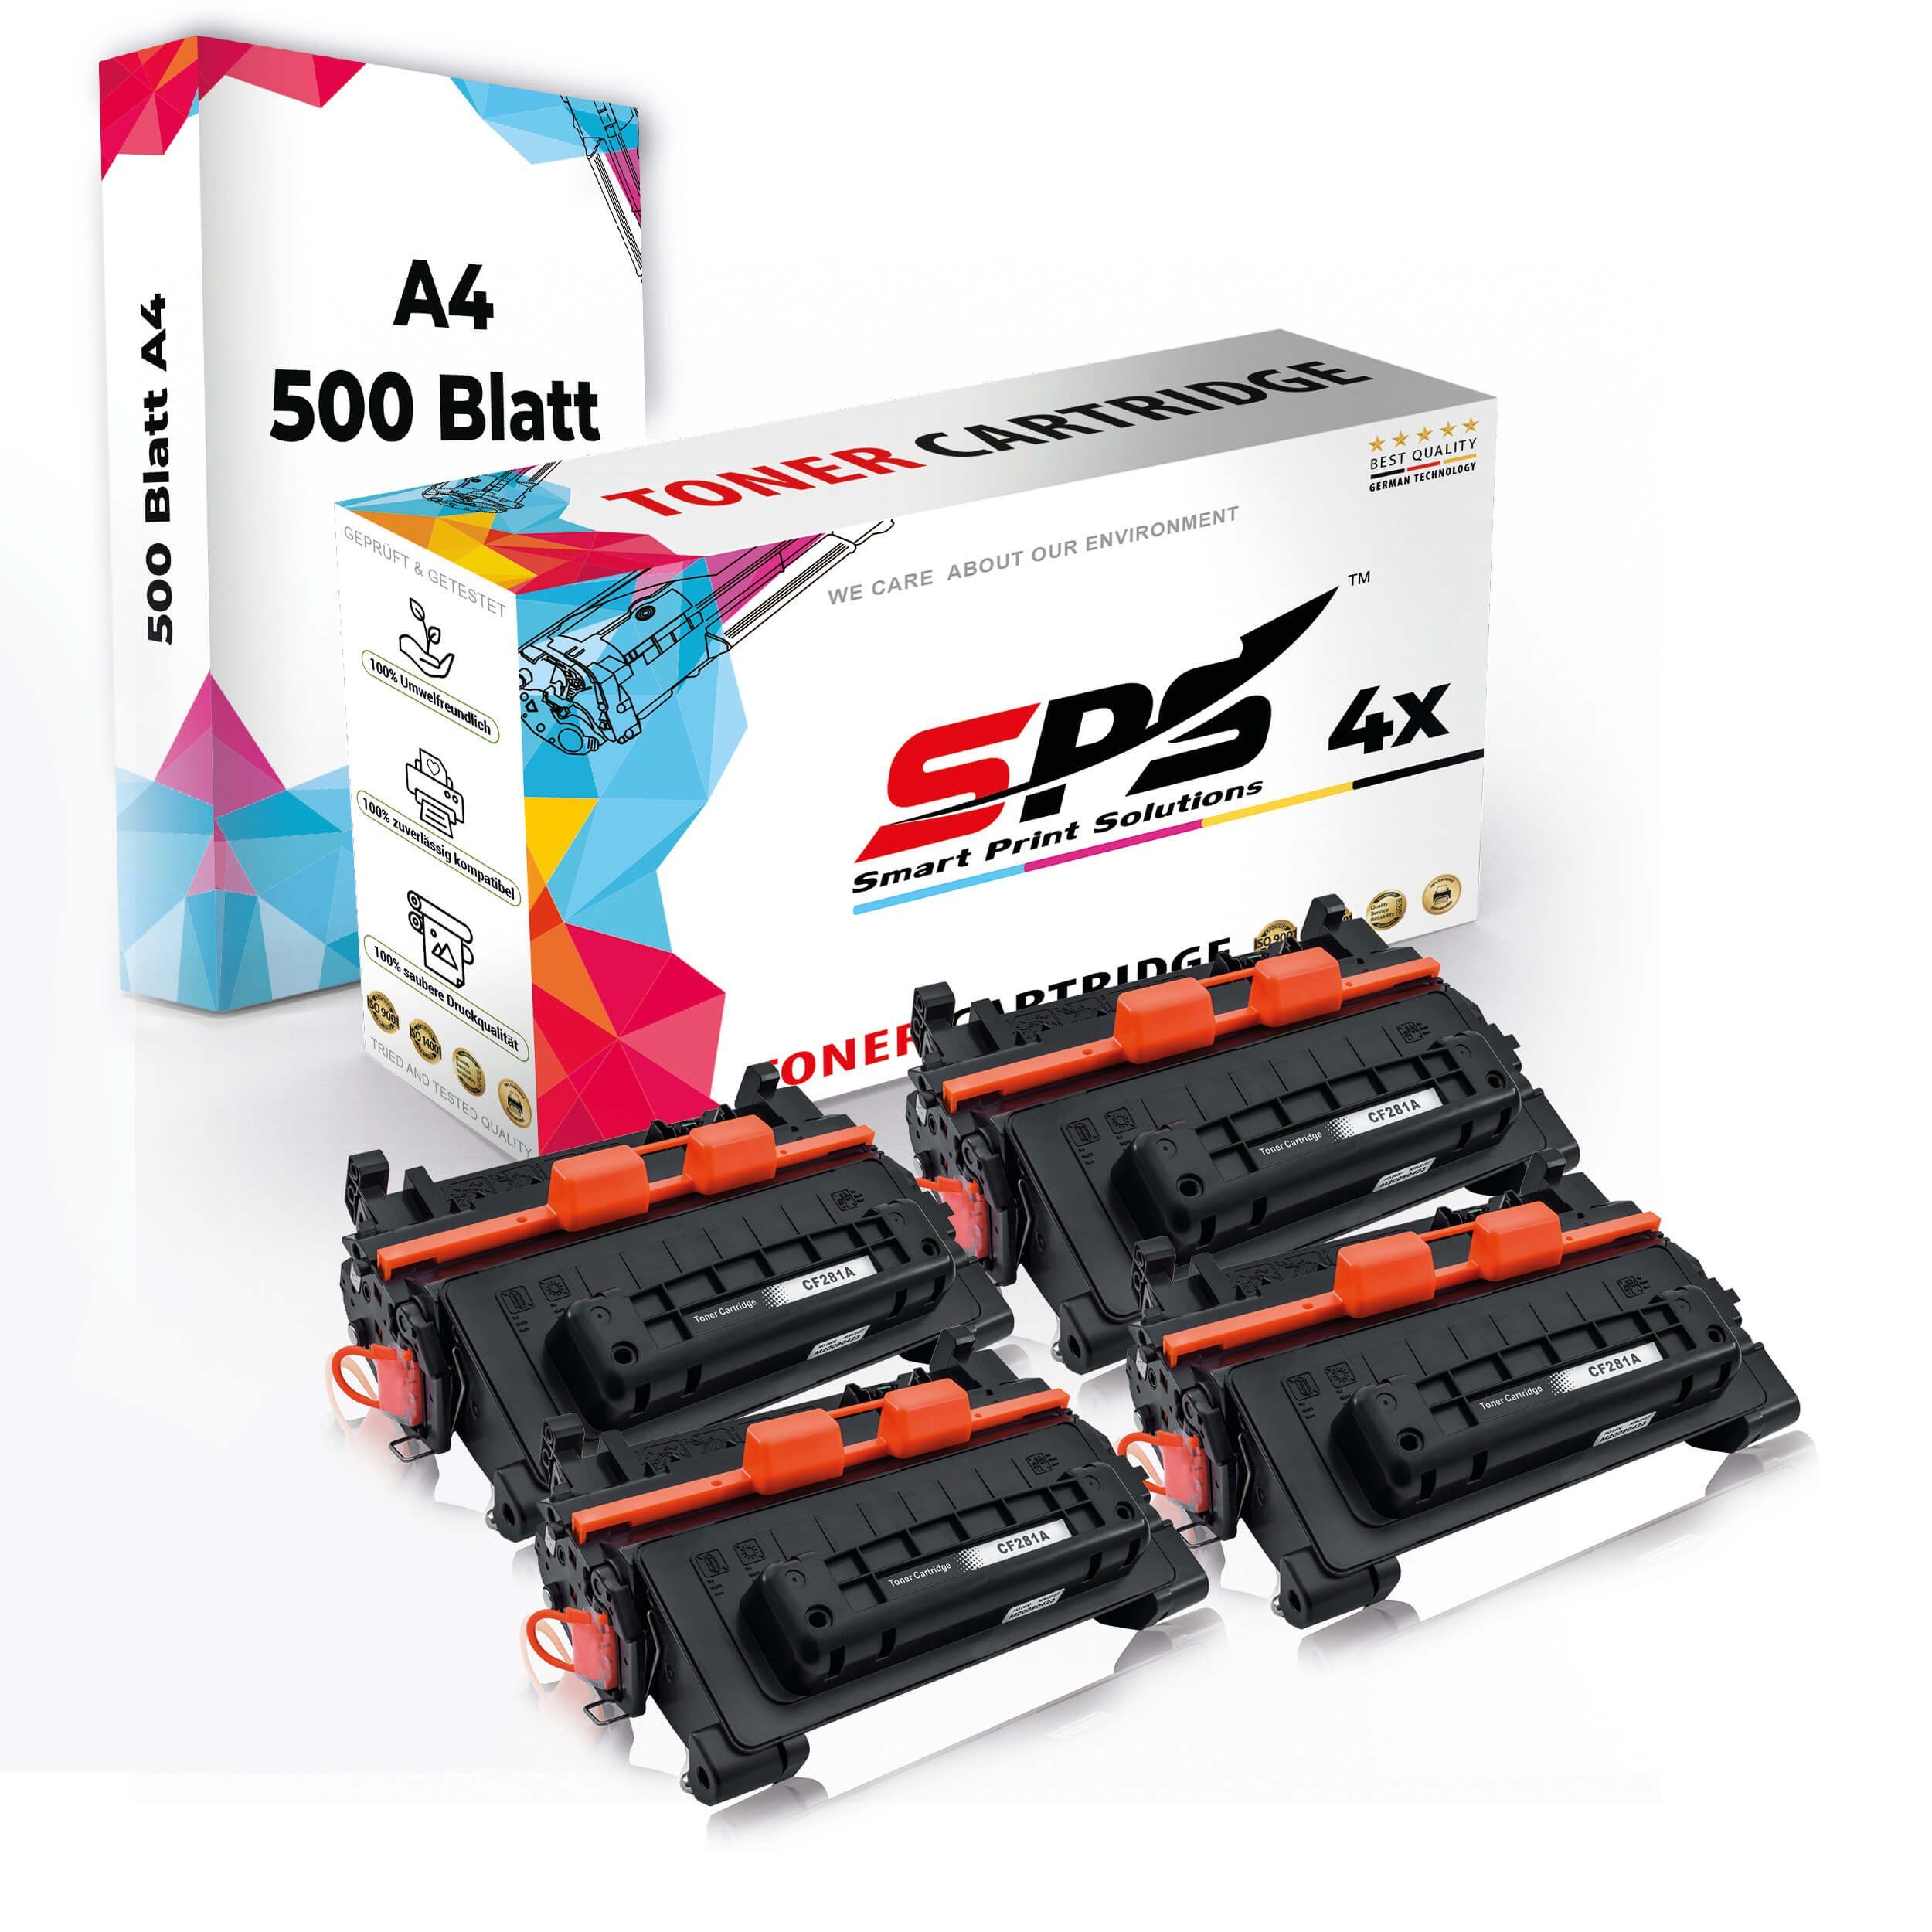 SPS Multipack Druckerpapier Pack, Tonerkartusche 4x Kompatibel, (4er Set + A4 Druckerpapier) Toner,1x 4x A4